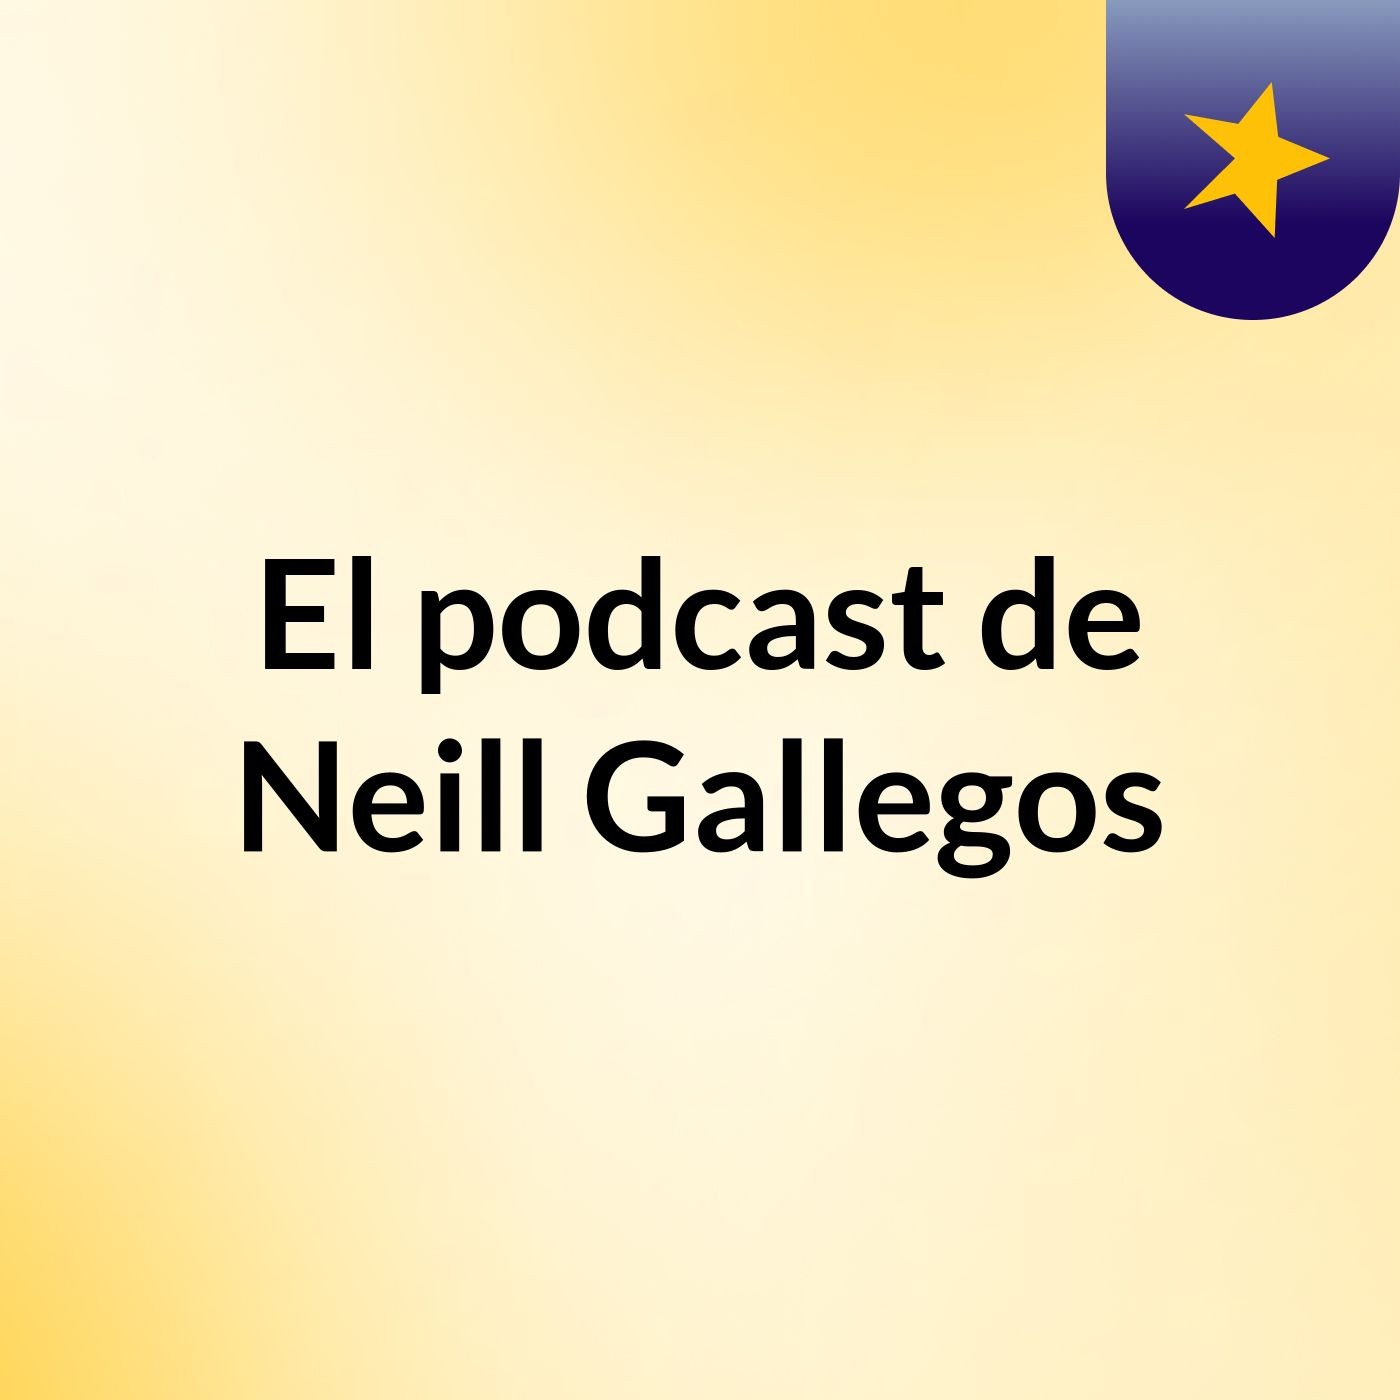 El podcast de Neill Gallegos